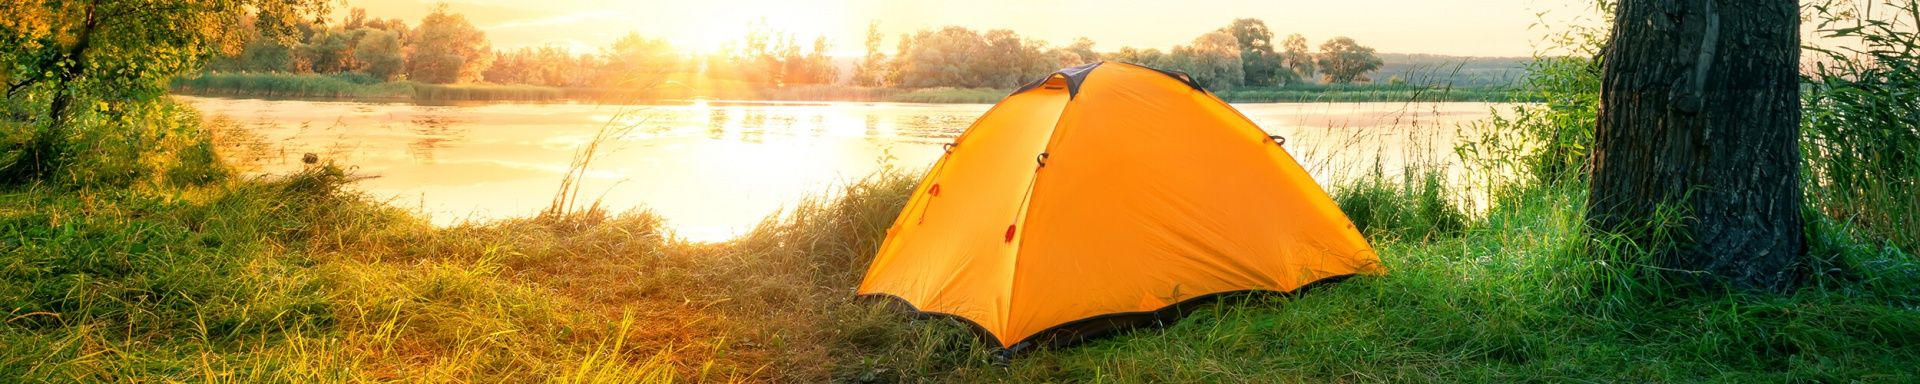 Ein Zelt steht während des Sonnenuntergangs am See.